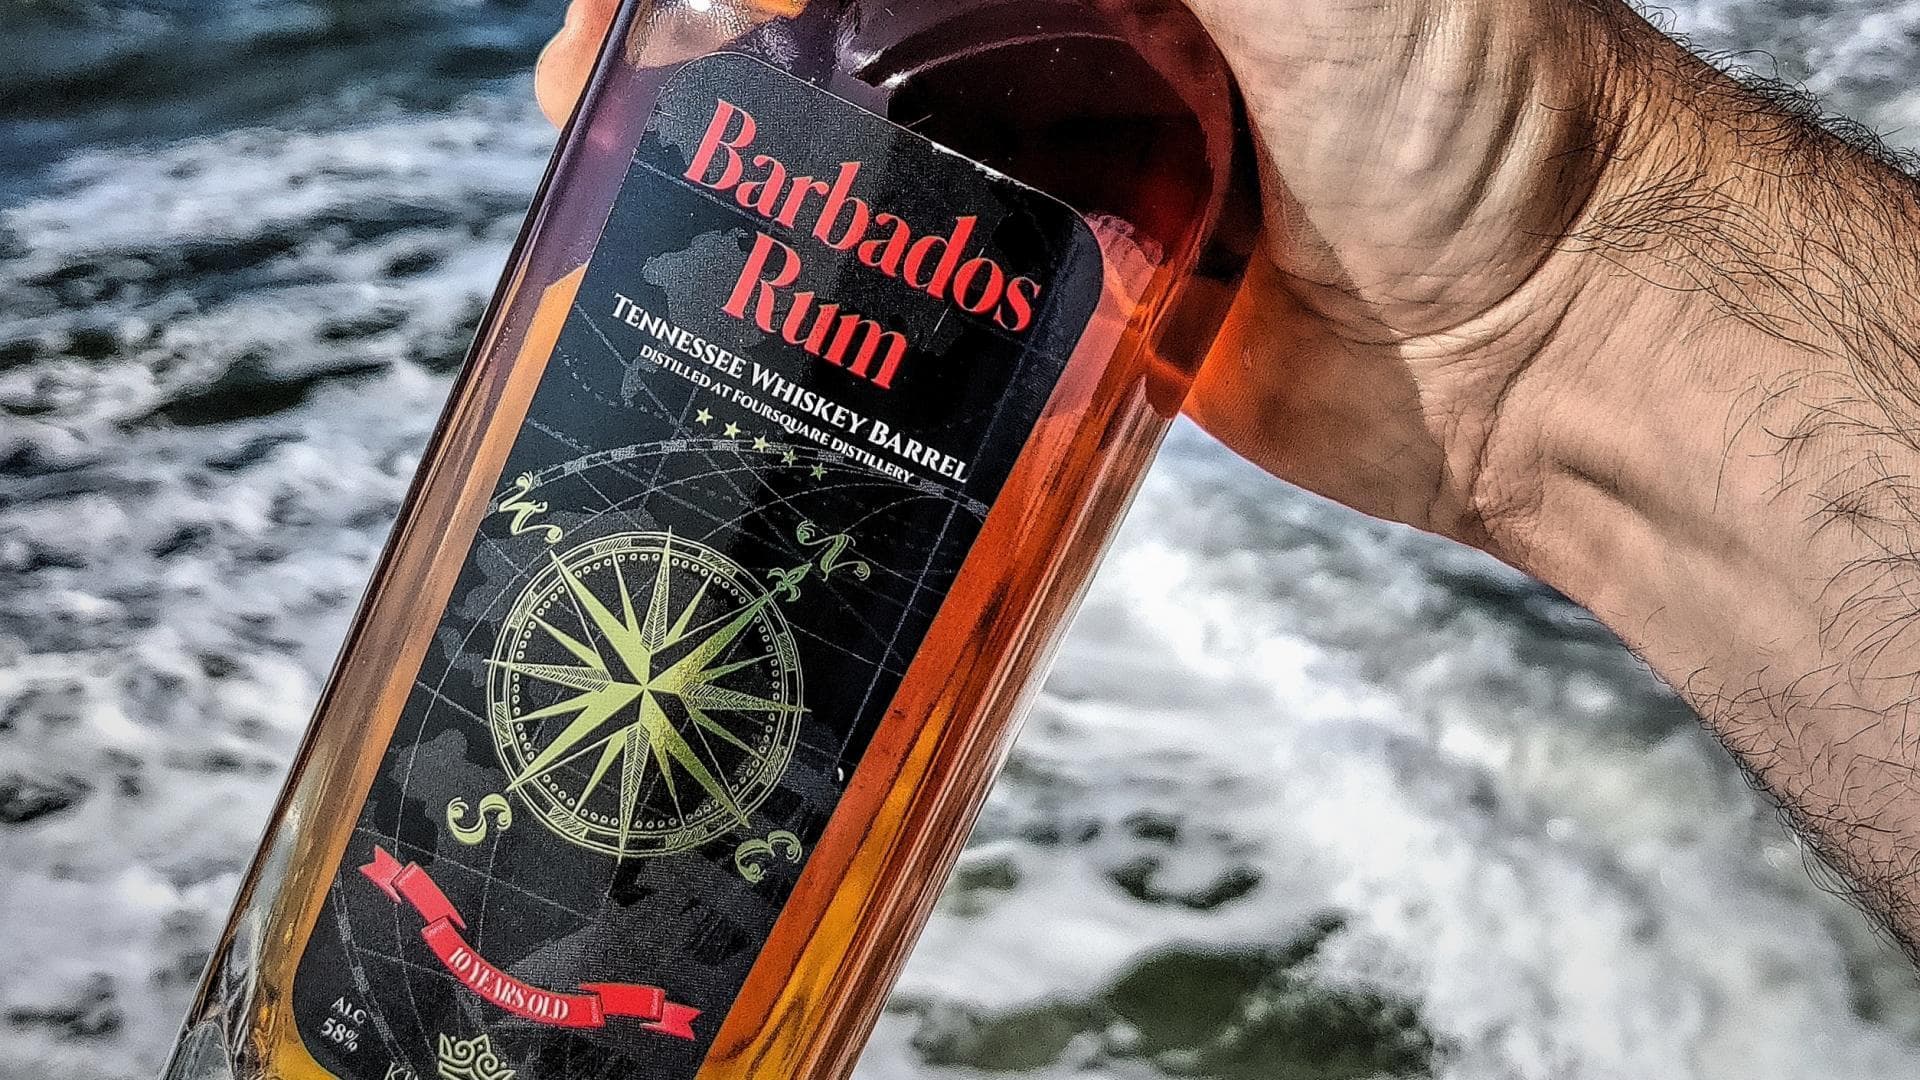 Op zee gerijpt whisky en rumproeverij op de Holland door Dam Dranken 0